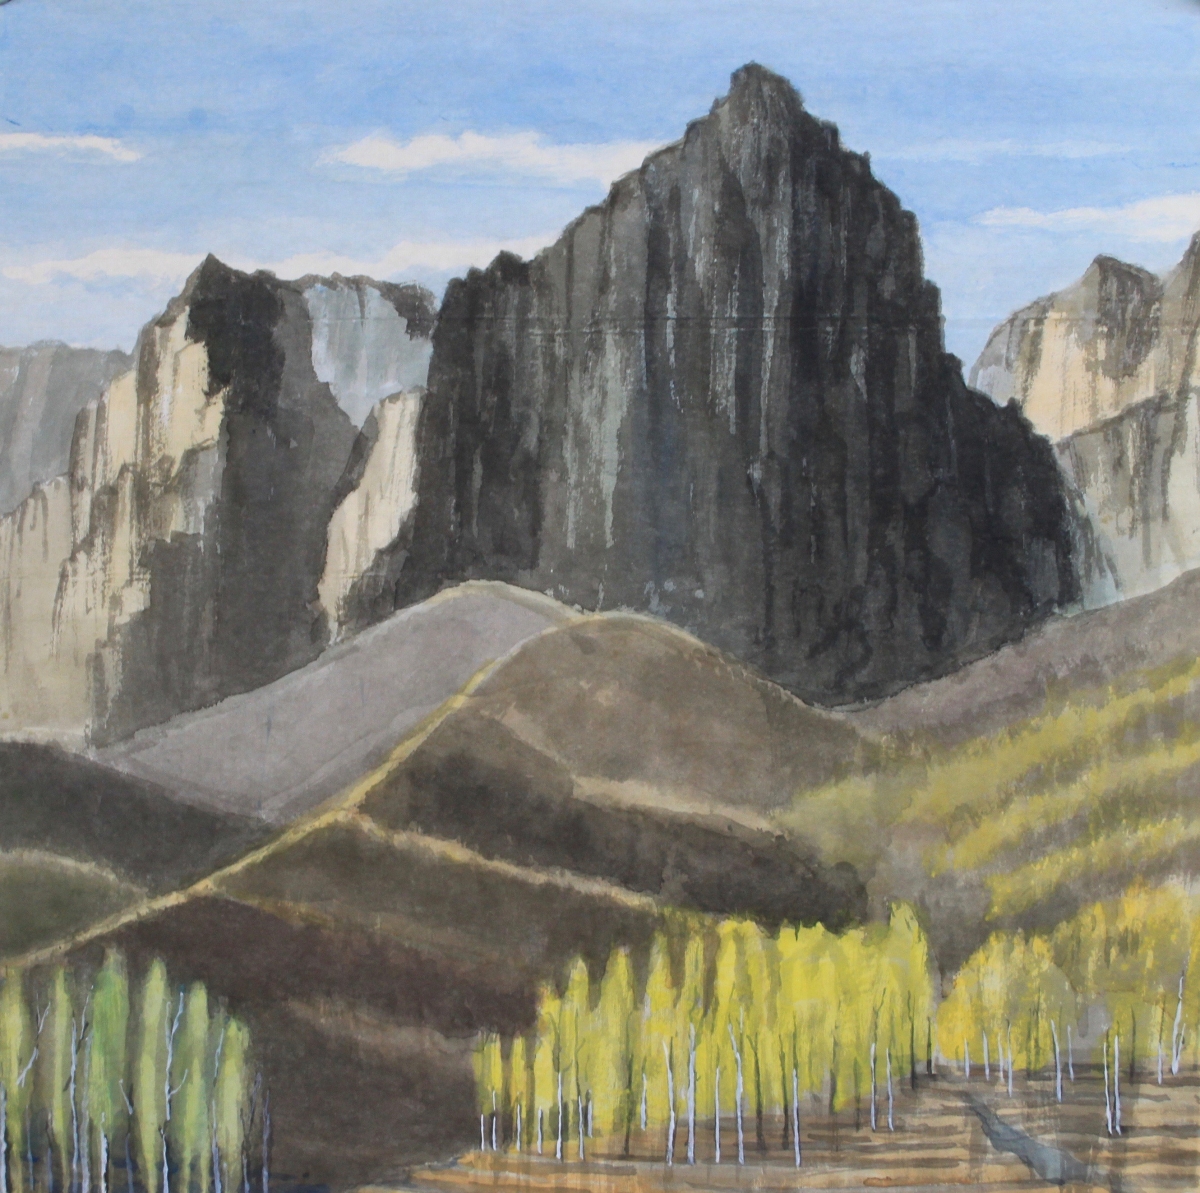 太行山脈  Taihang Mountain Range, Shanxi   80x80